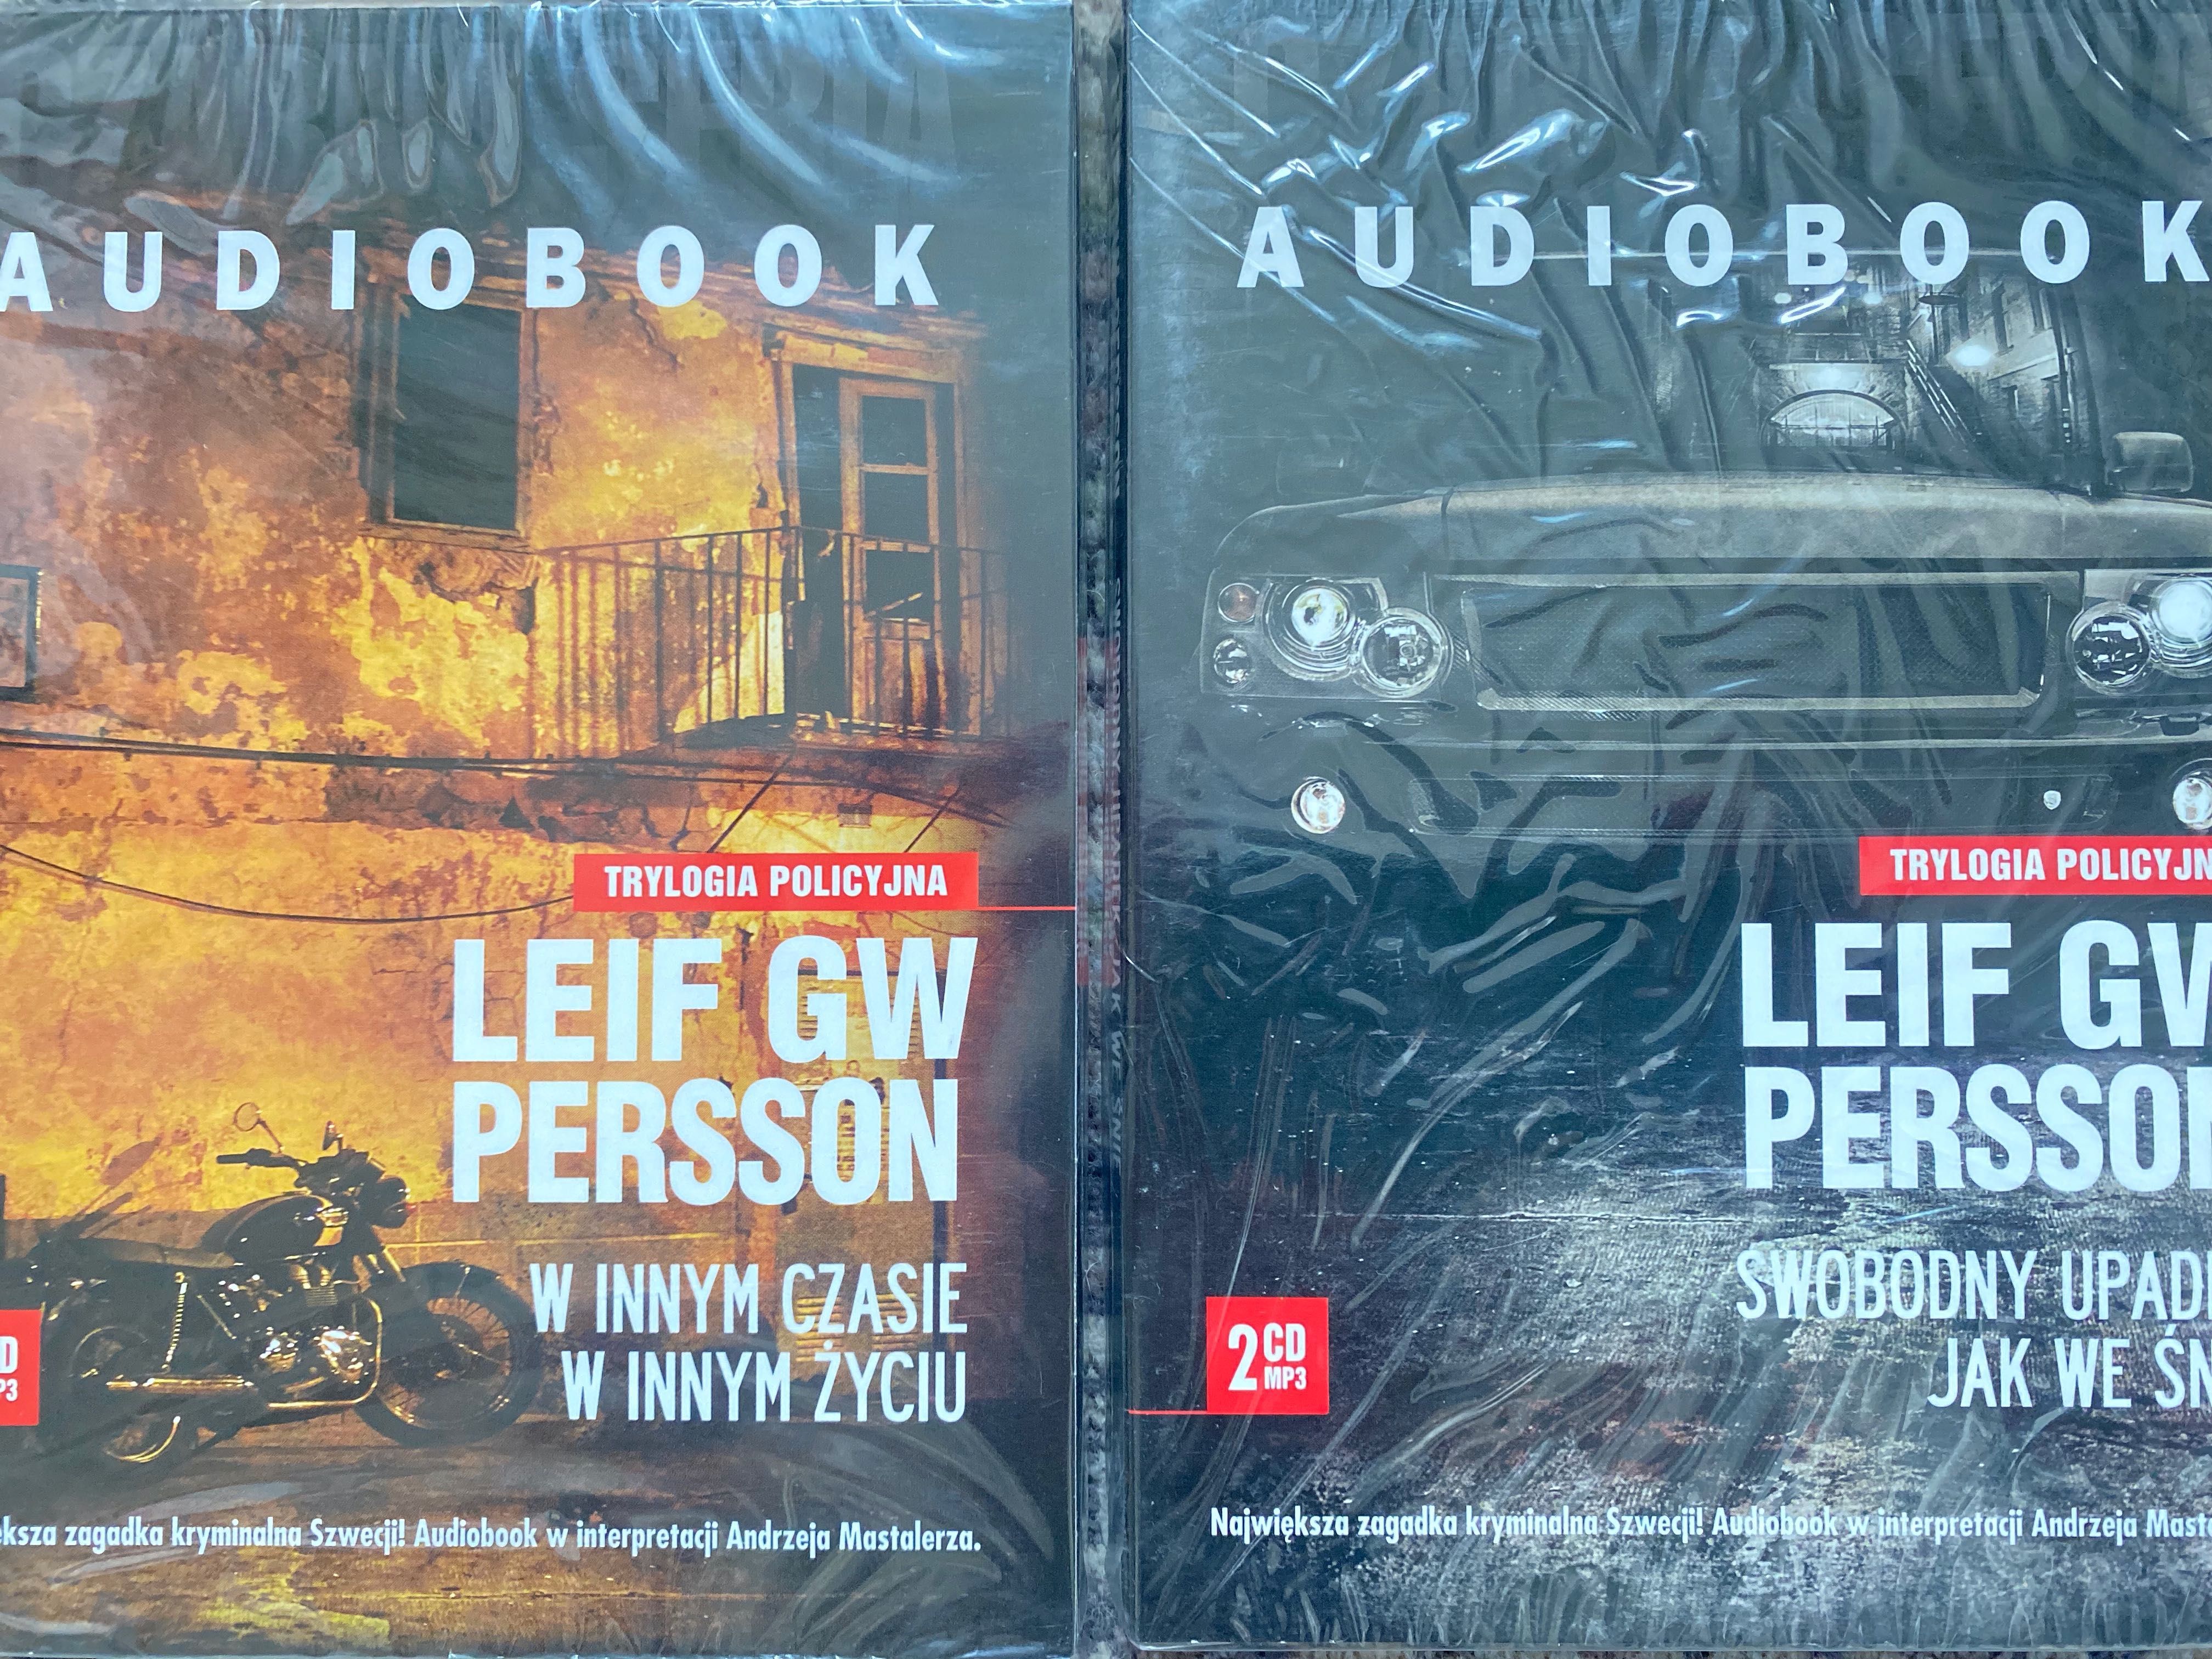 Audiobooki, Leif GW Persson, Swobodny upadek, W innym, cz. 2 i 3